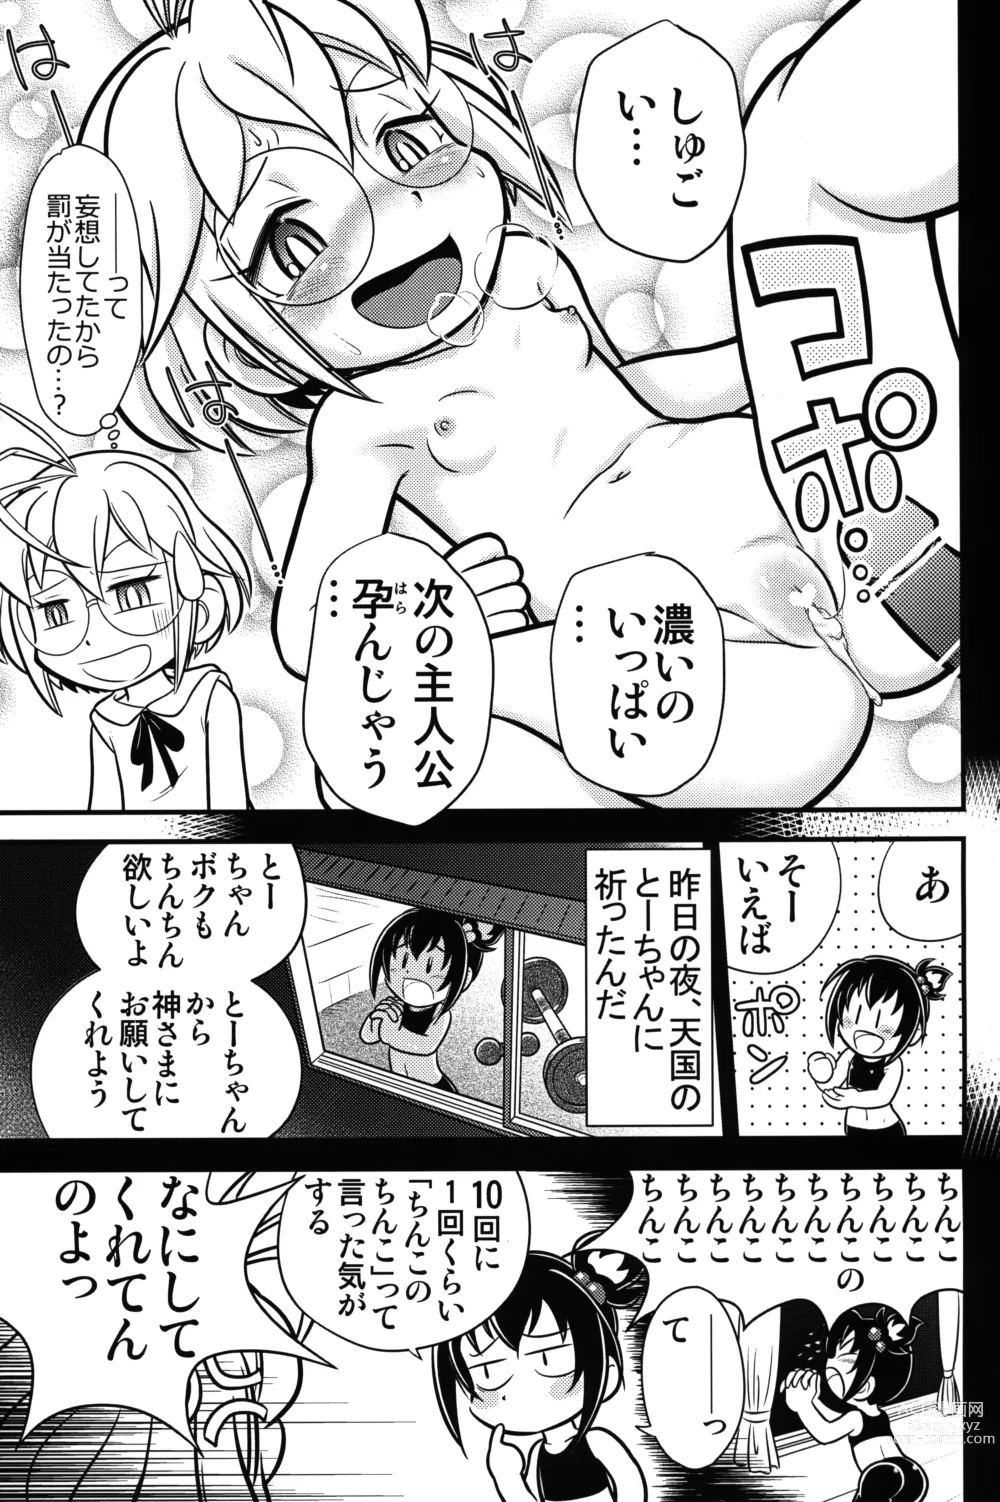 Page 10 of doujinshi Kyou no Danko 2